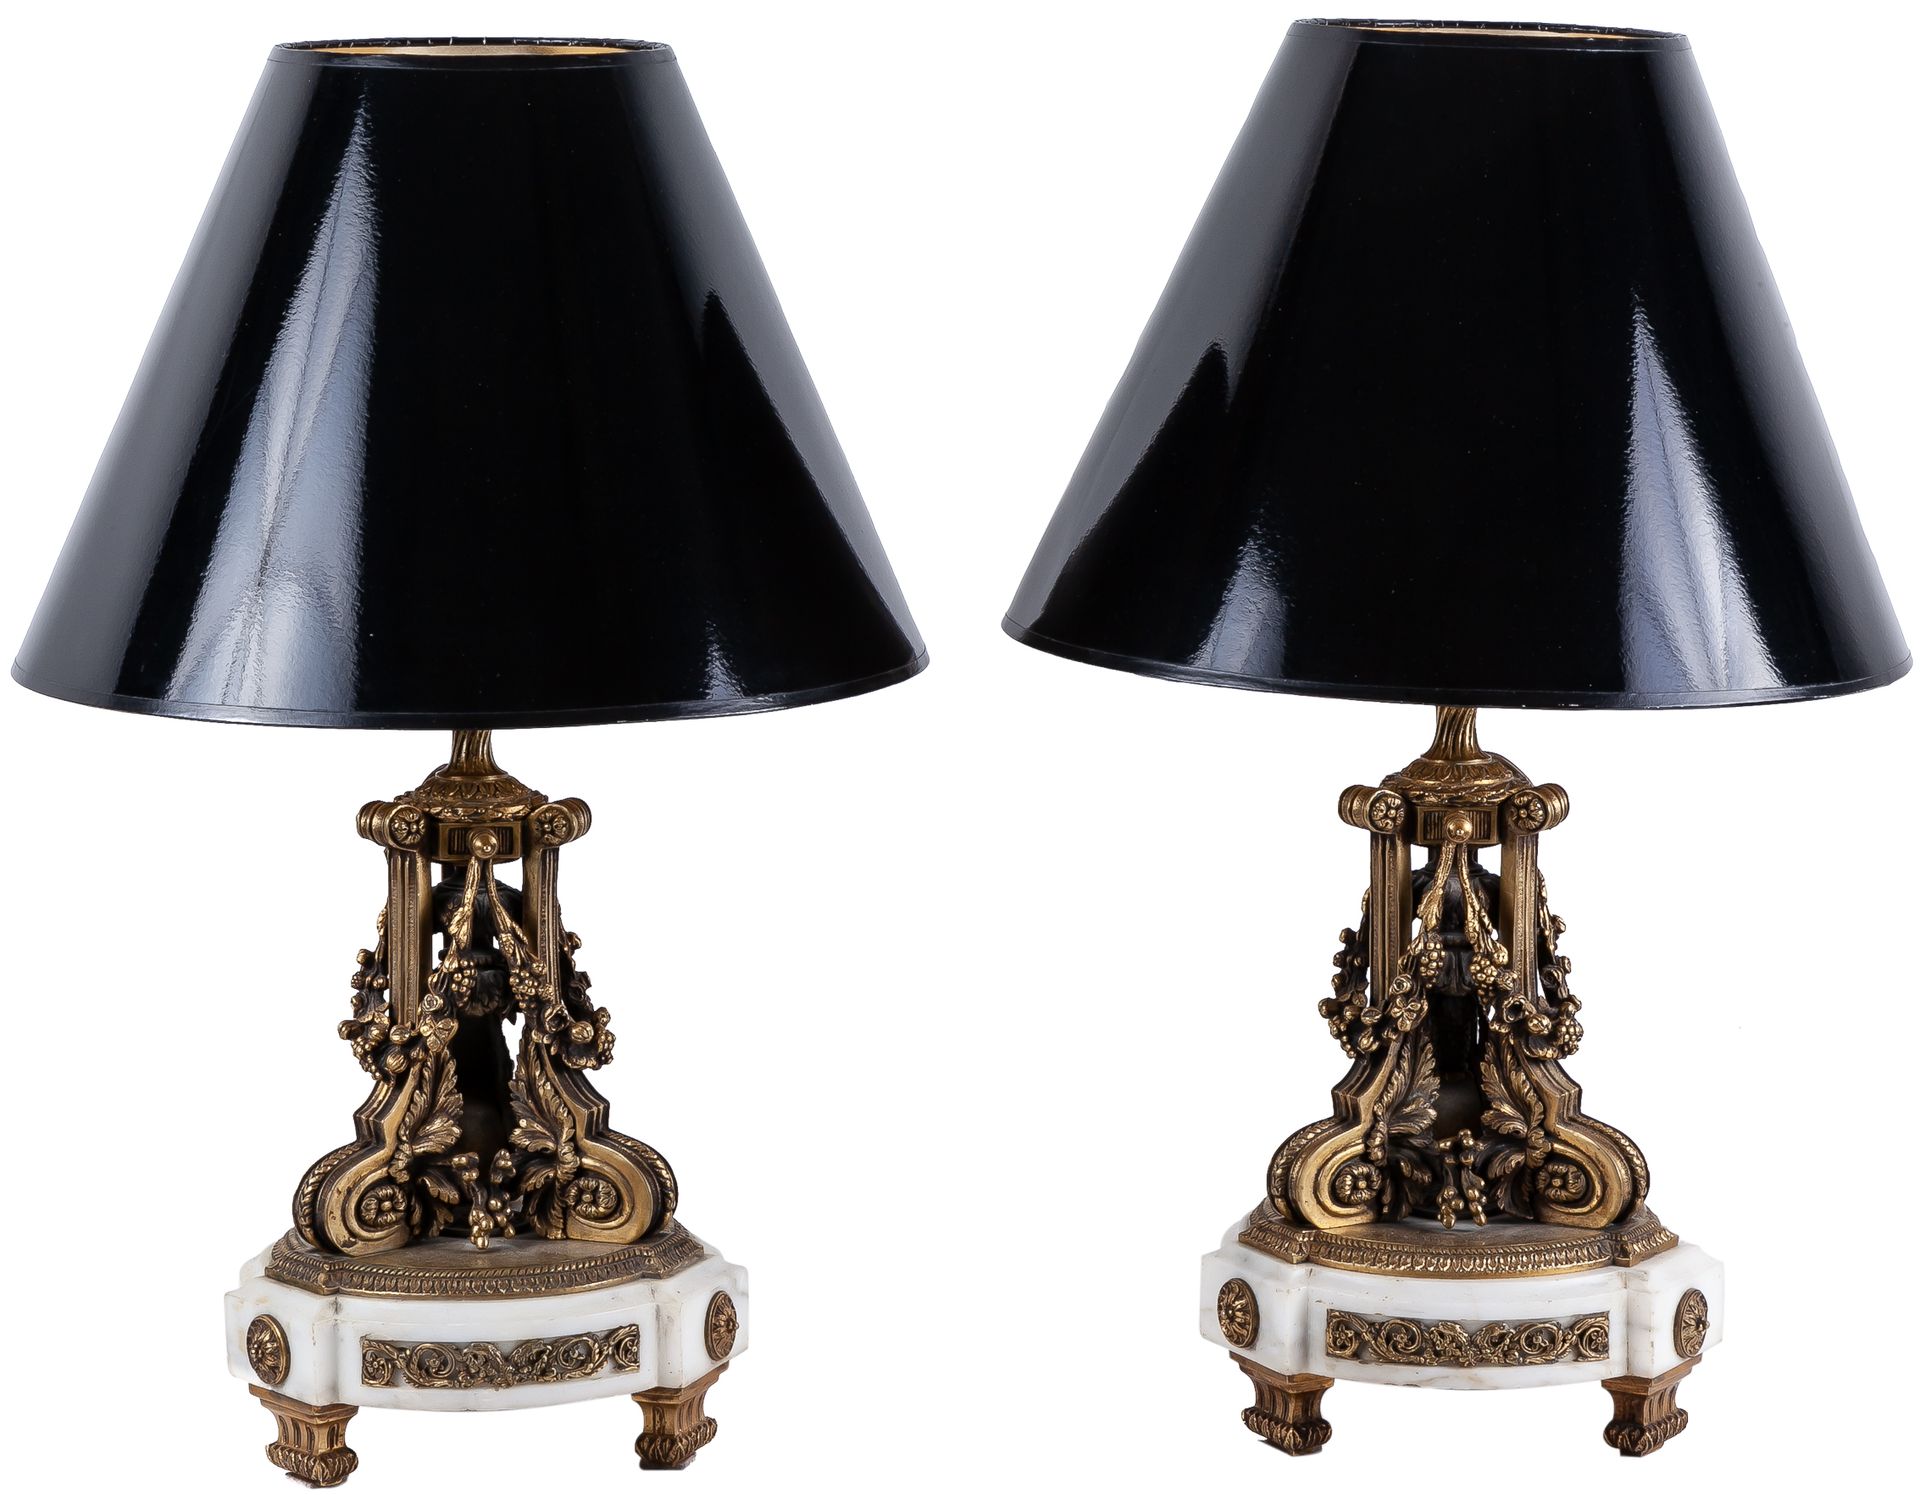 Null 一个路易十六风格的青铜和白色大理石台灯

57 x 20厘米，带灯罩

400 - 600 €